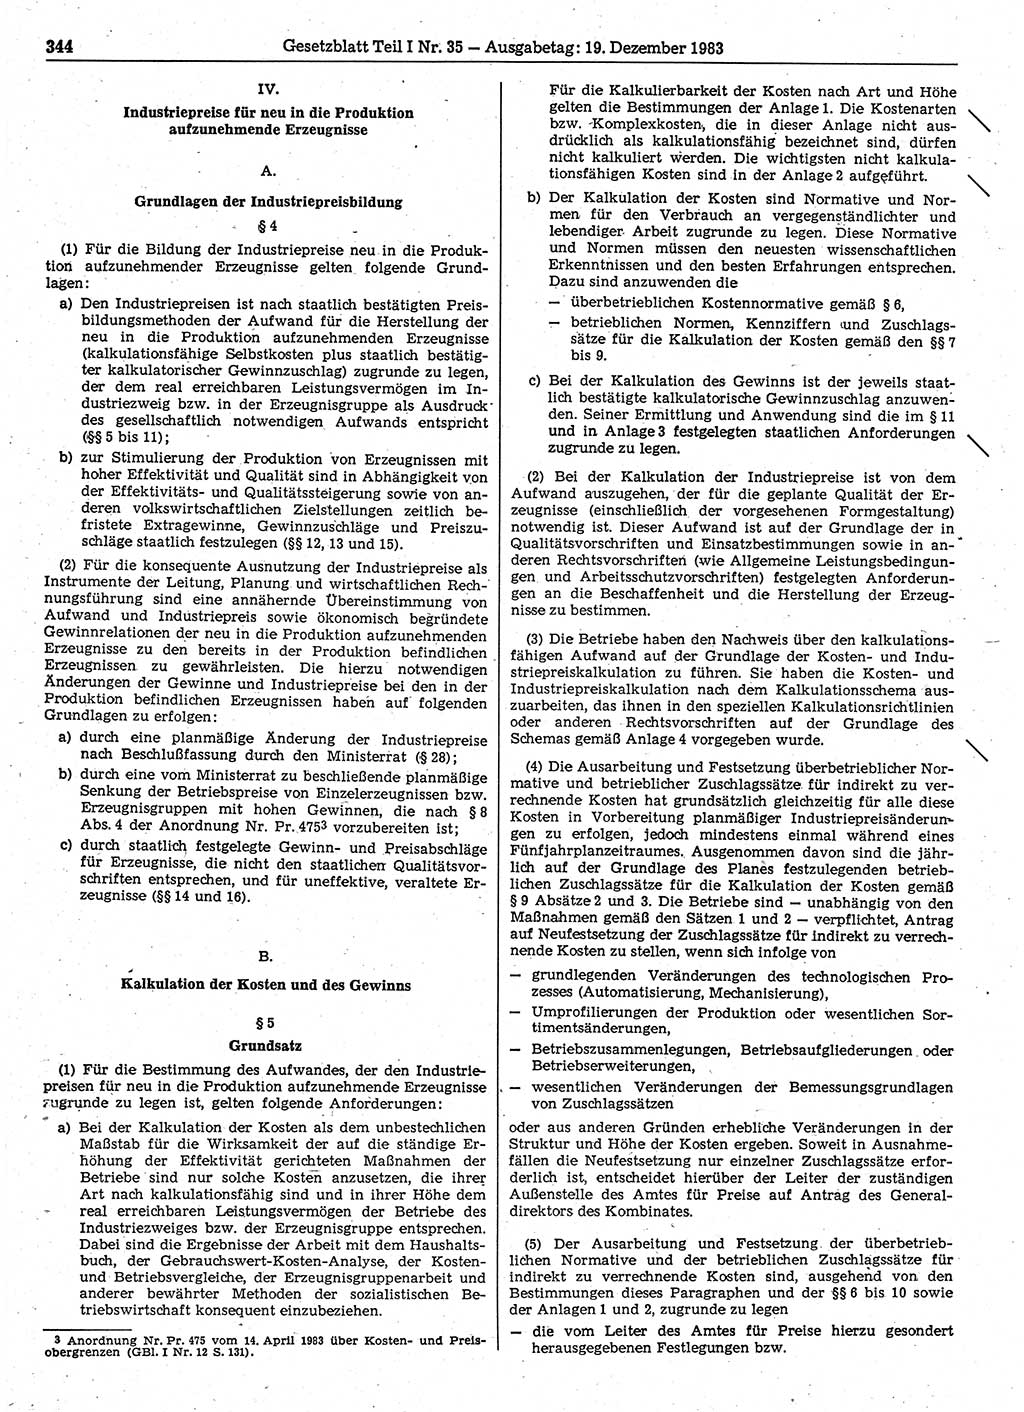 Gesetzblatt (GBl.) der Deutschen Demokratischen Republik (DDR) Teil Ⅰ 1983, Seite 344 (GBl. DDR Ⅰ 1983, S. 344)